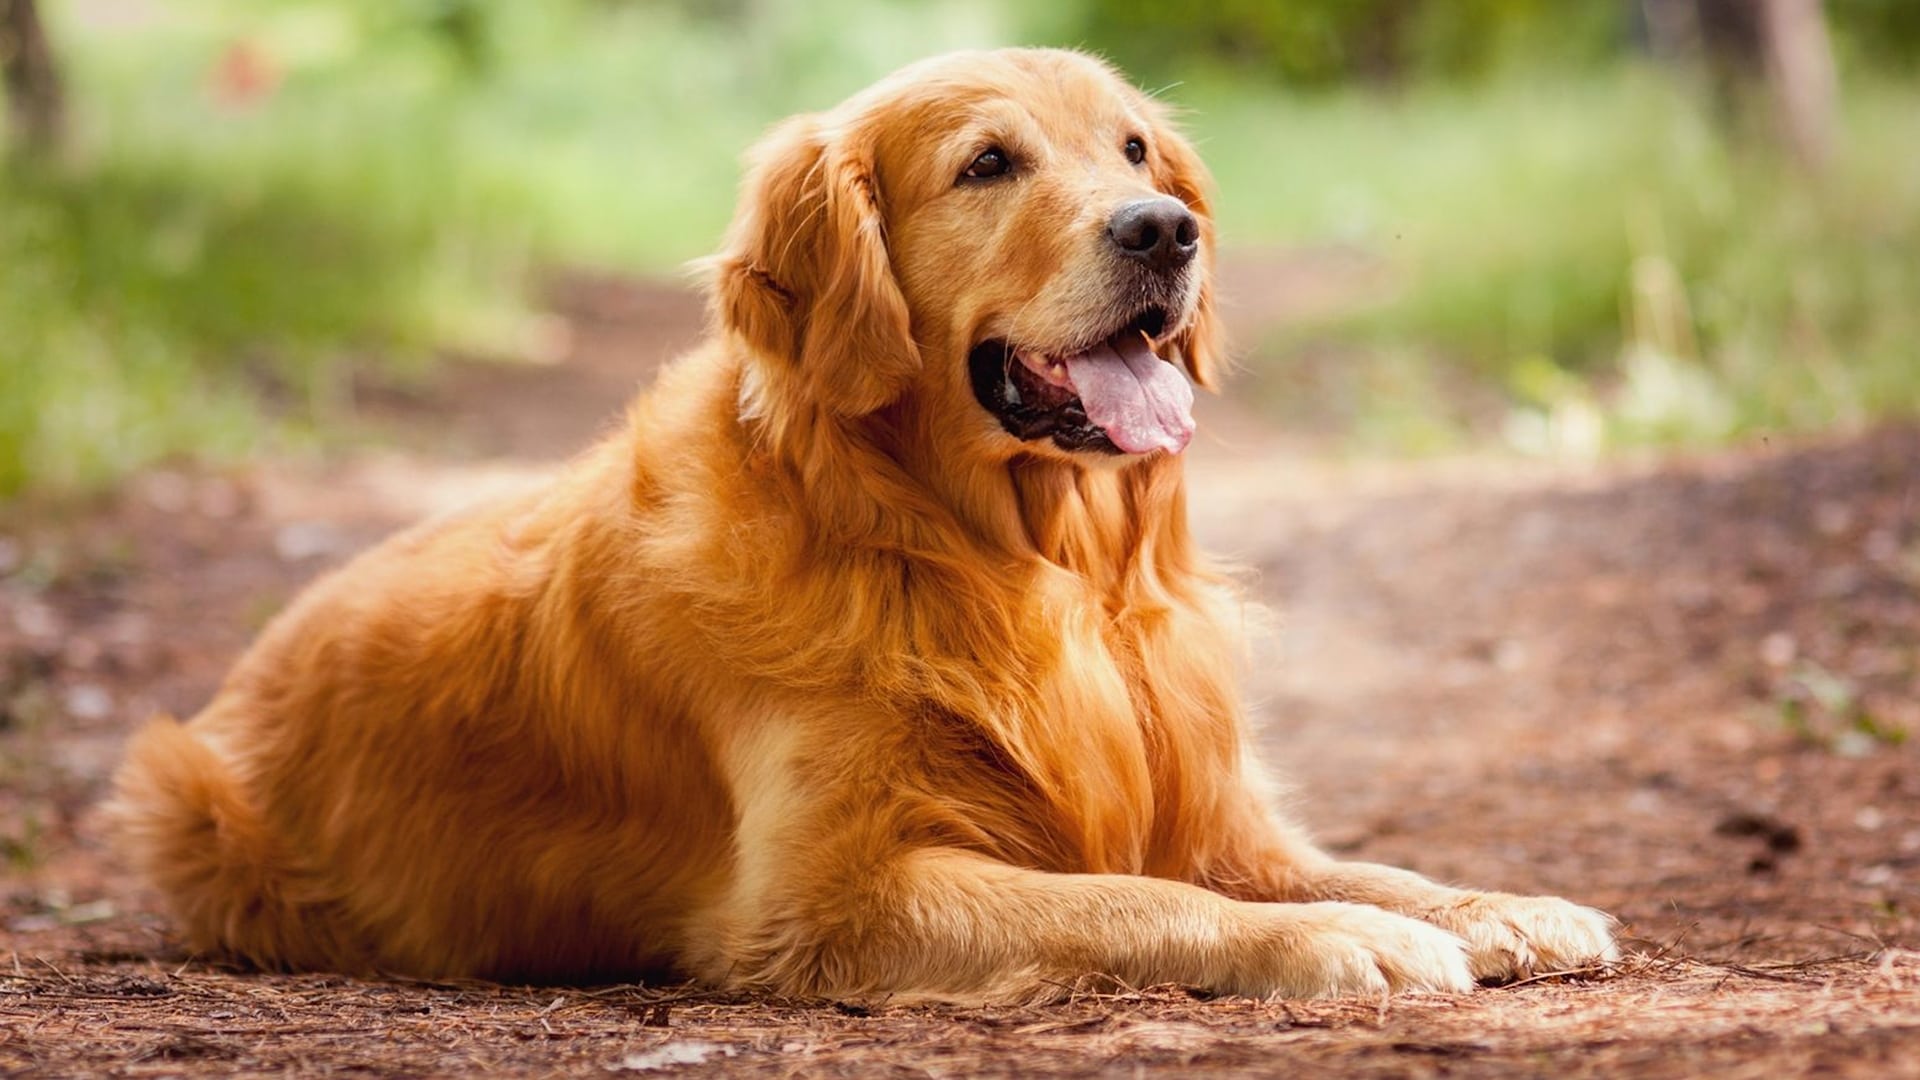 Mục Đích Sống Của Một Chú Chó - A Dog's Purpose | Razorphim